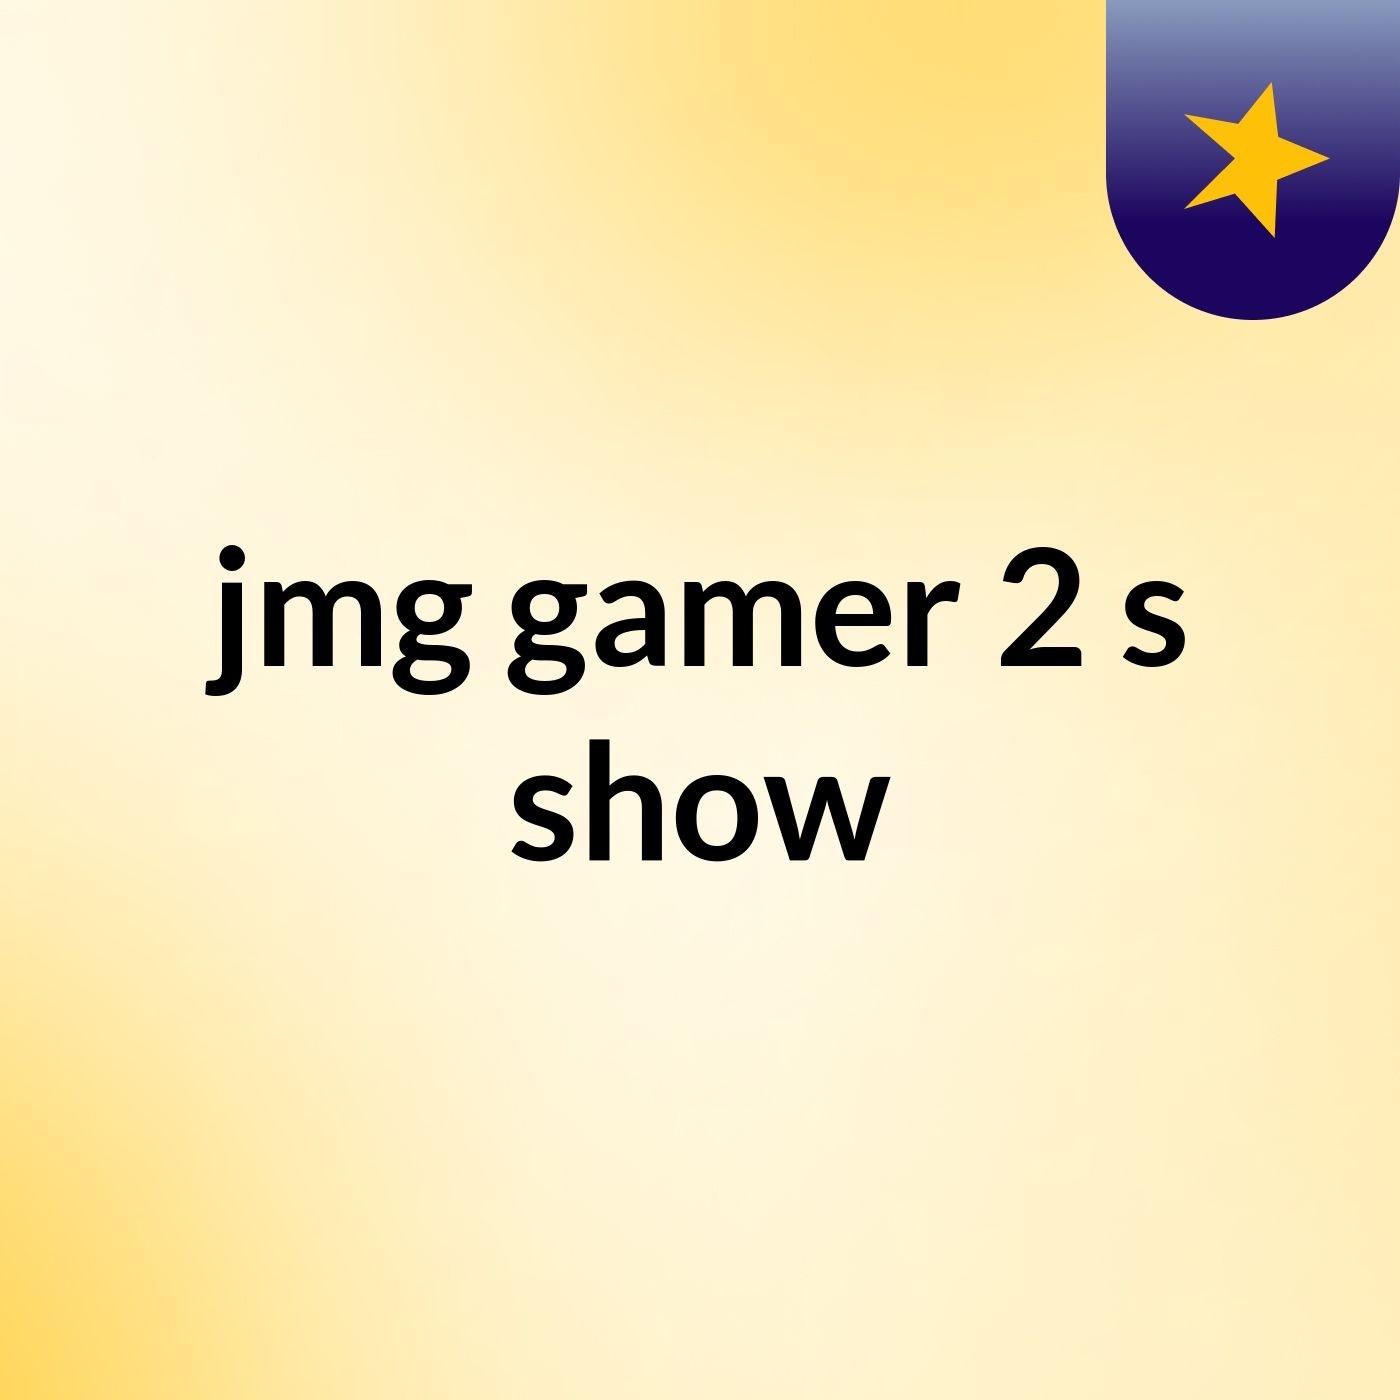 jmg gamer 2's show